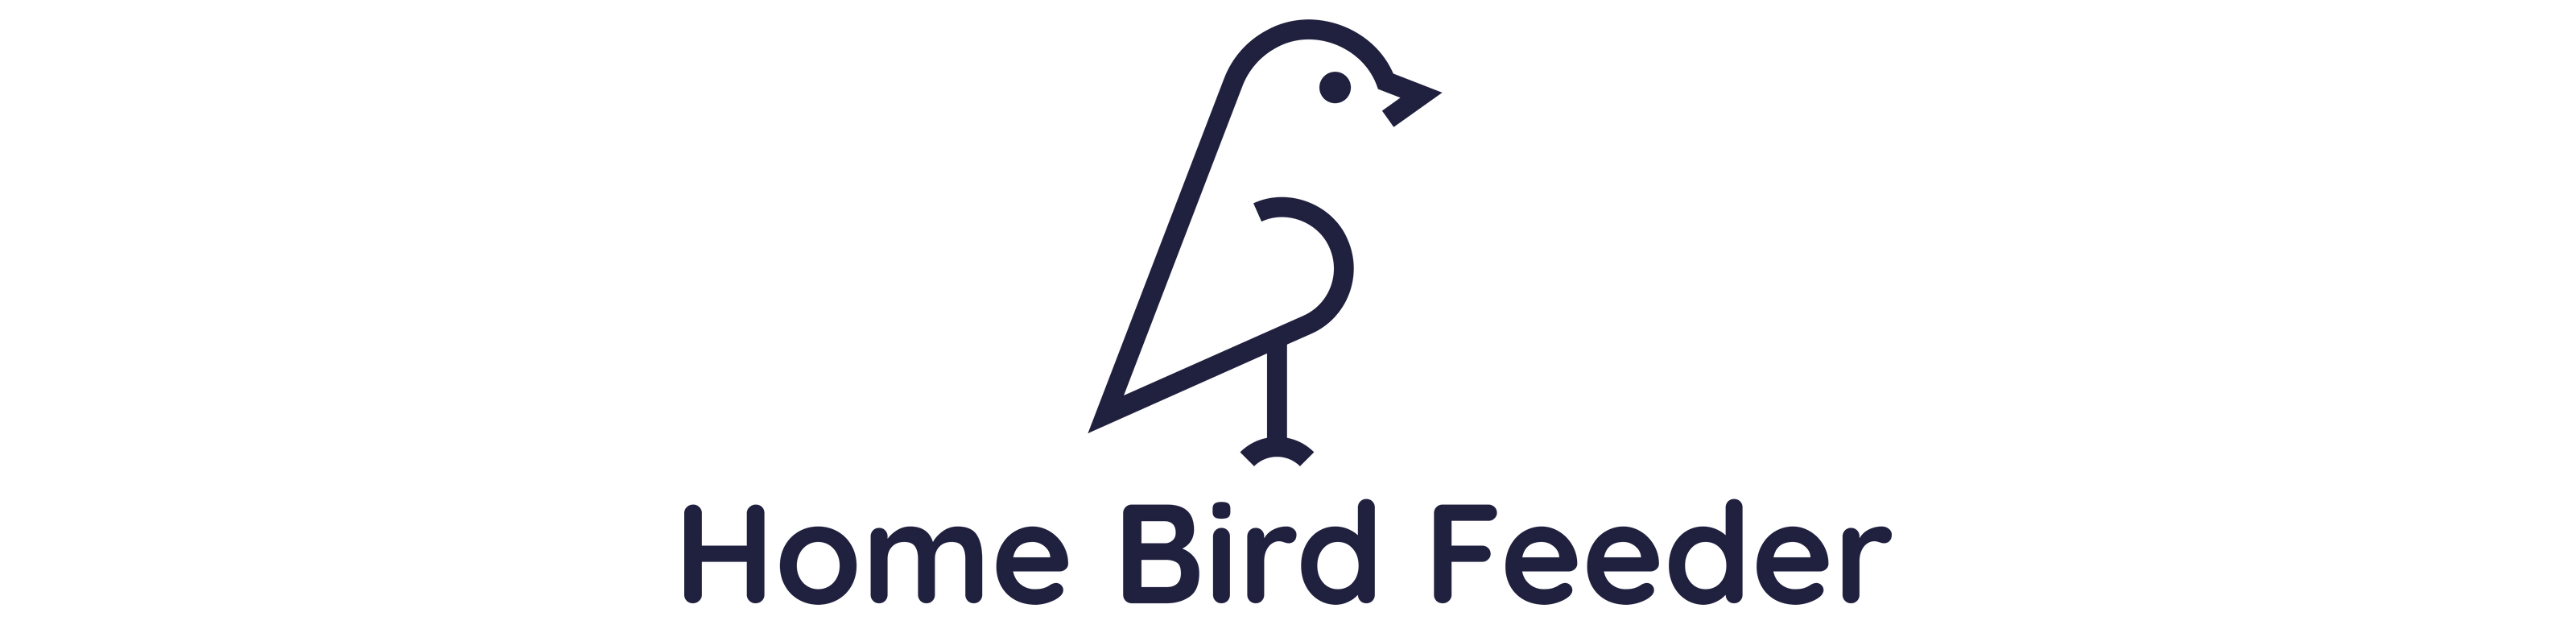 Home Bird Feeder